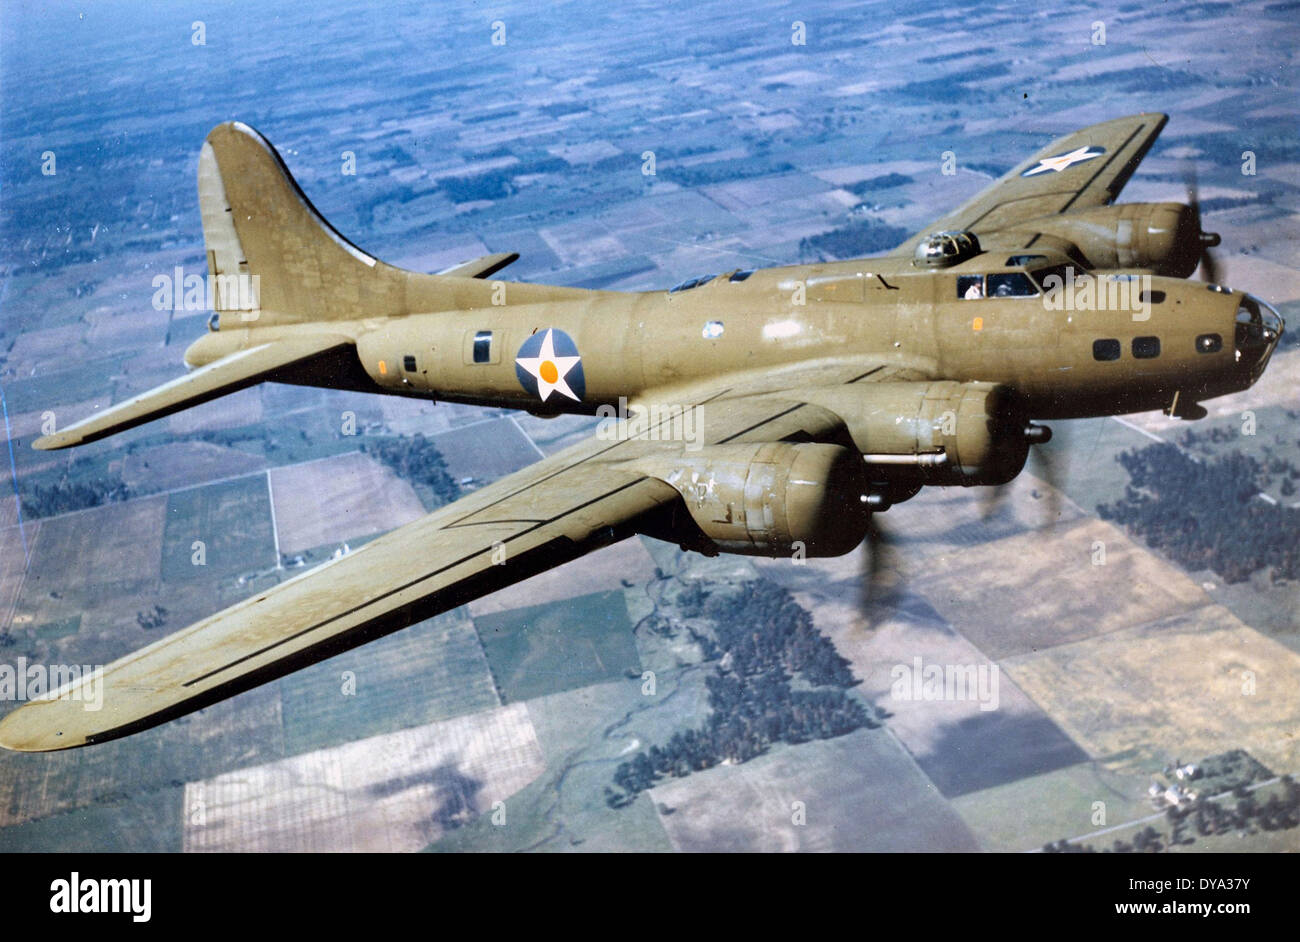 Ww Ii Historische Krieg Weltkrieg Zweiter Weltkrieg Flugzeug Boeing B 17 Fliegende Festung Bomber 1944 Felder Bomber Stockfotografie Alamy